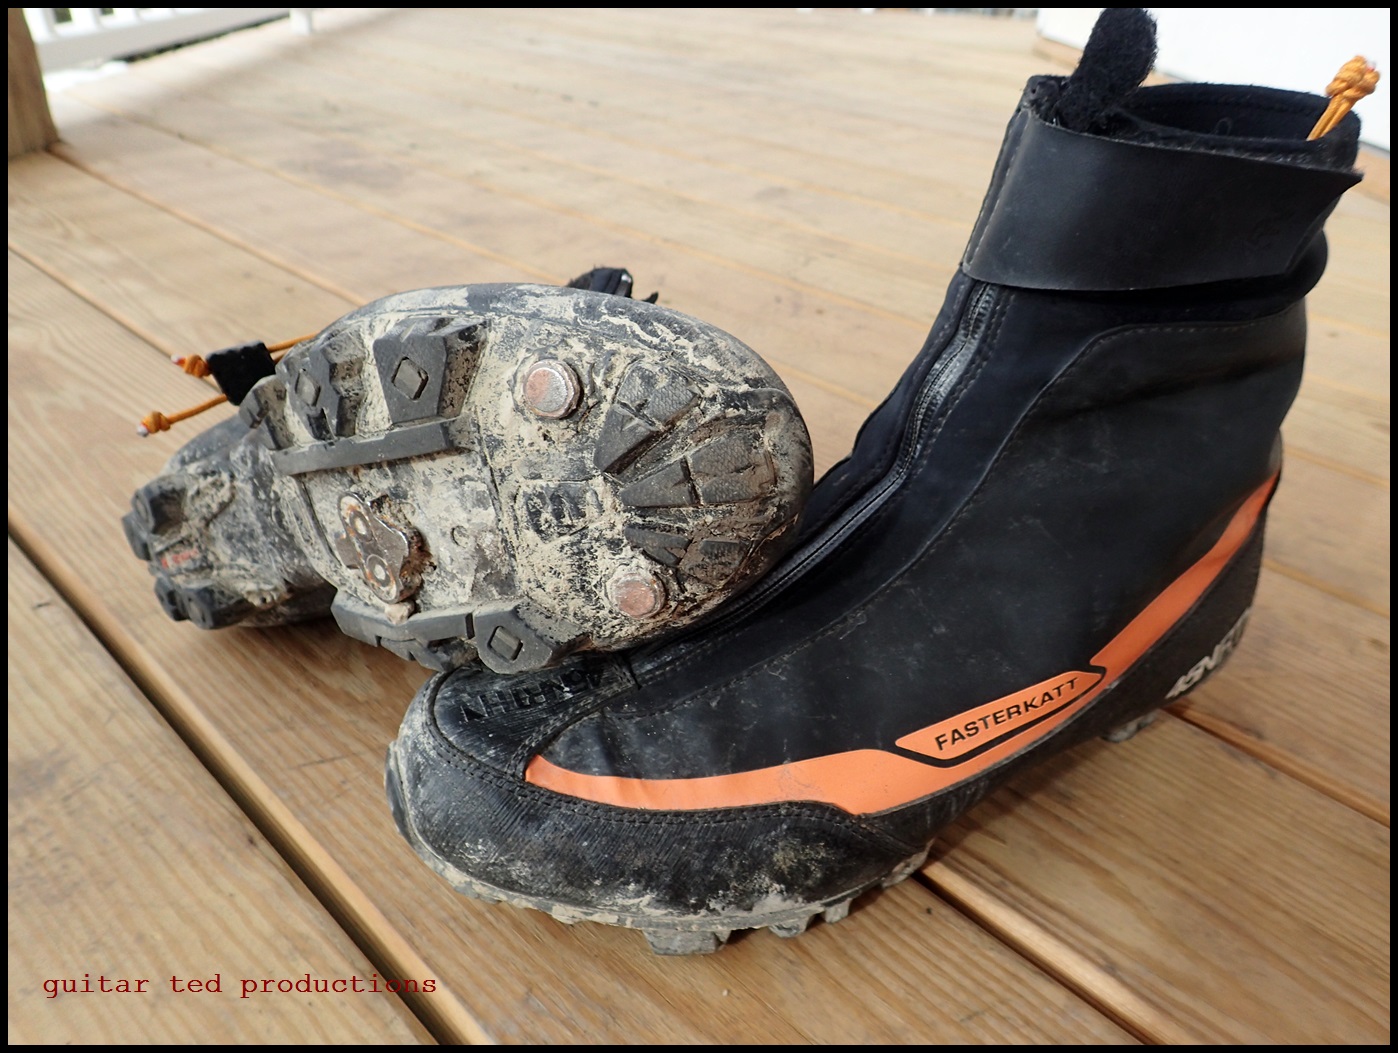 45NRTH Fasterkatt Boots: Reviewed - Riding Gravel